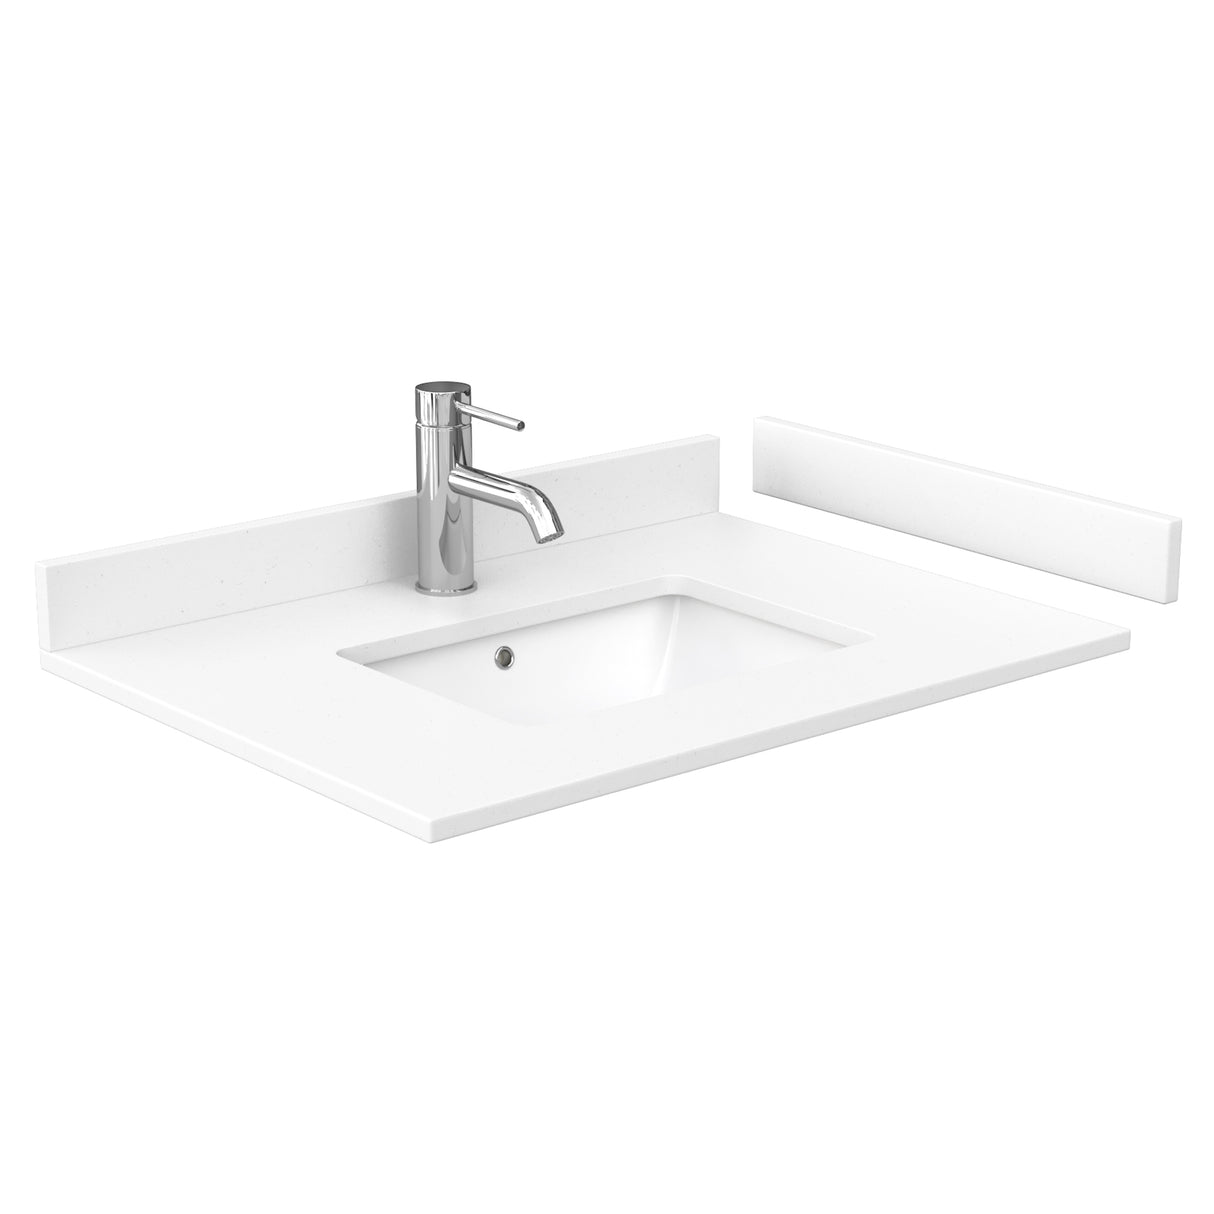 Deborah 30 Inch Single Bathroom Vanity in Dark Espresso White Cultured Marble Countertop Undermount Square Sink No Mirror